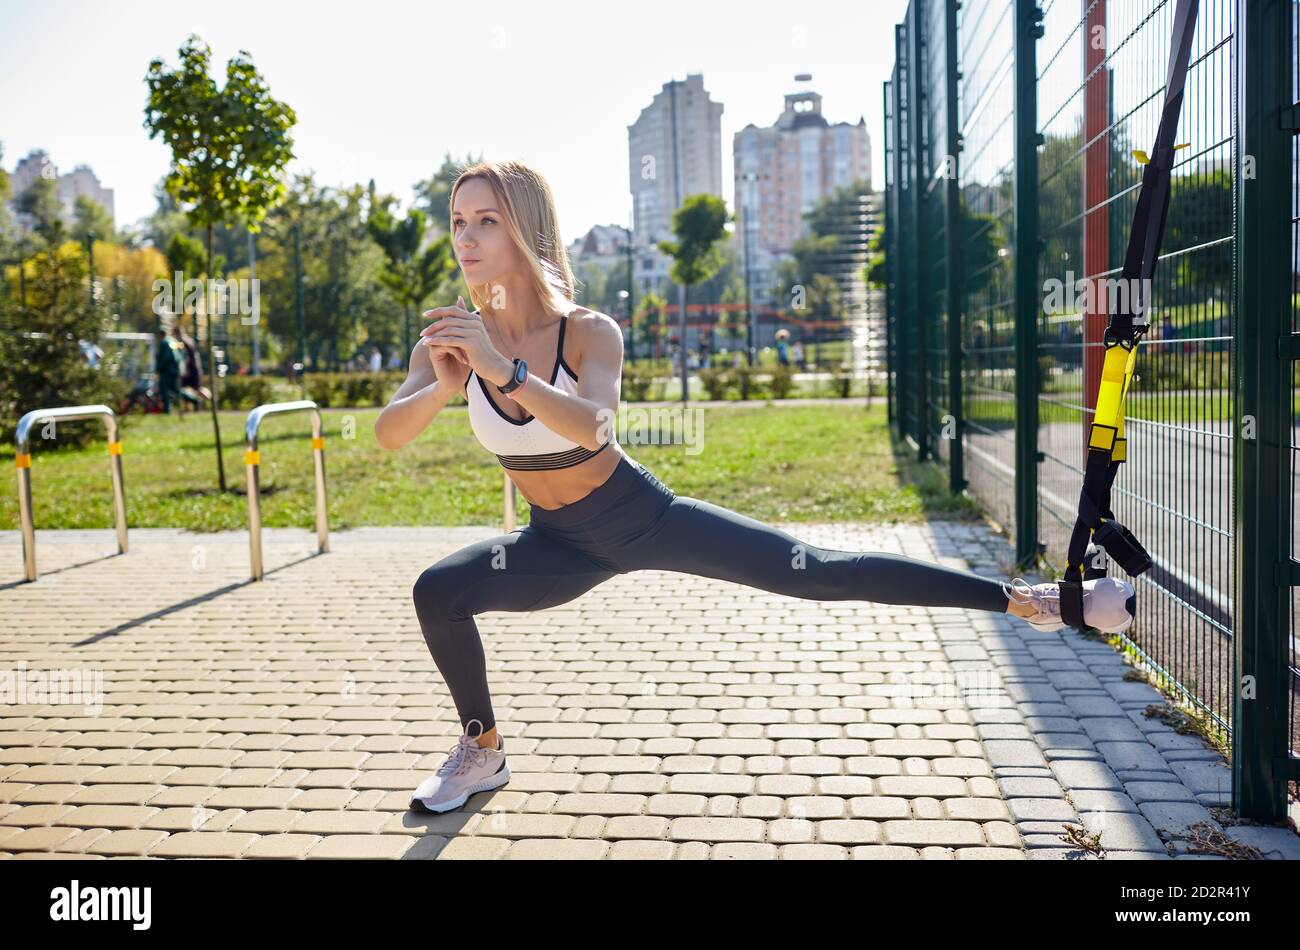 Durchführen von TRX-Übungen. Junge athletische Frau in Sportbekleidung Trainingsbeine mit trx Fitnessriemen im Stadtpark Stockfoto